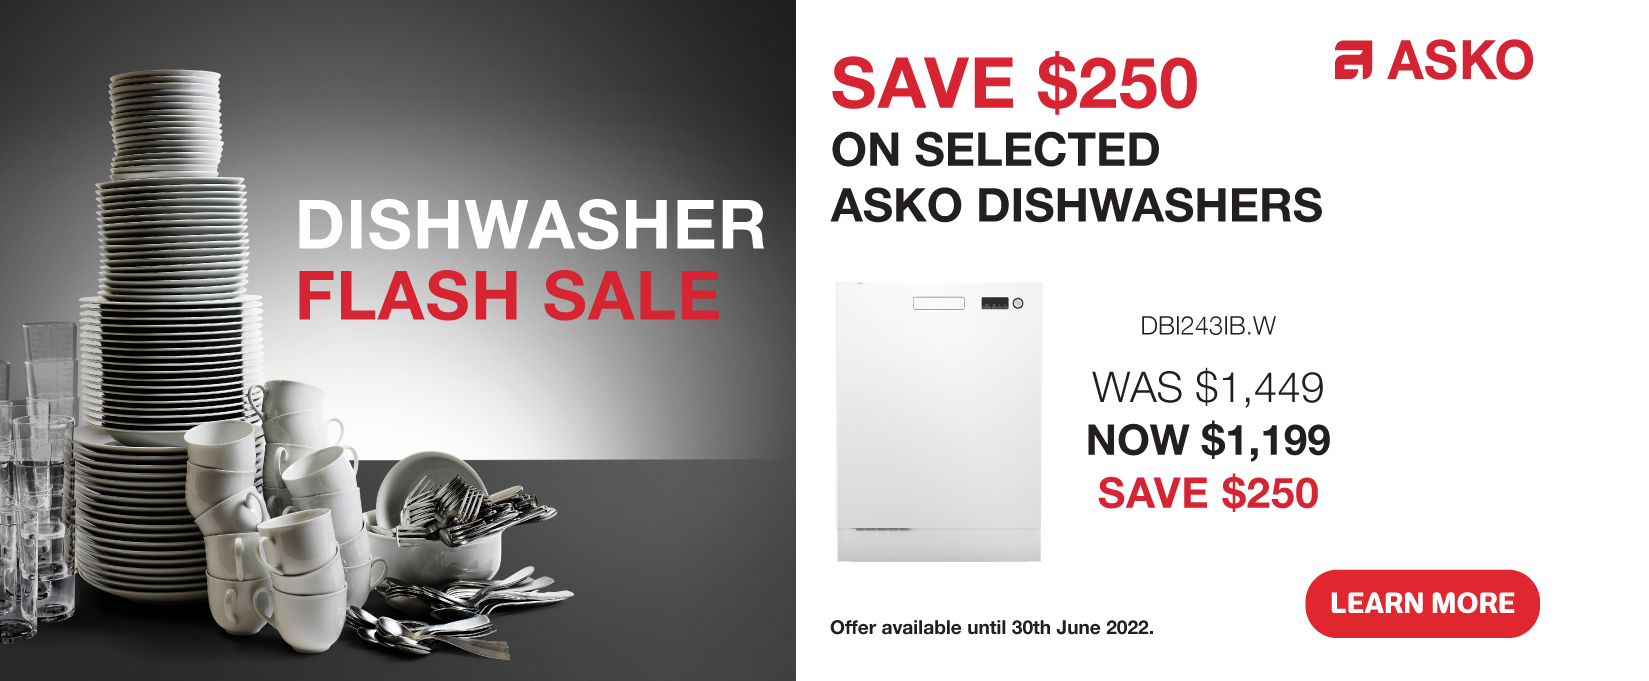 Save $250 On Selected ASKO Dishwashers